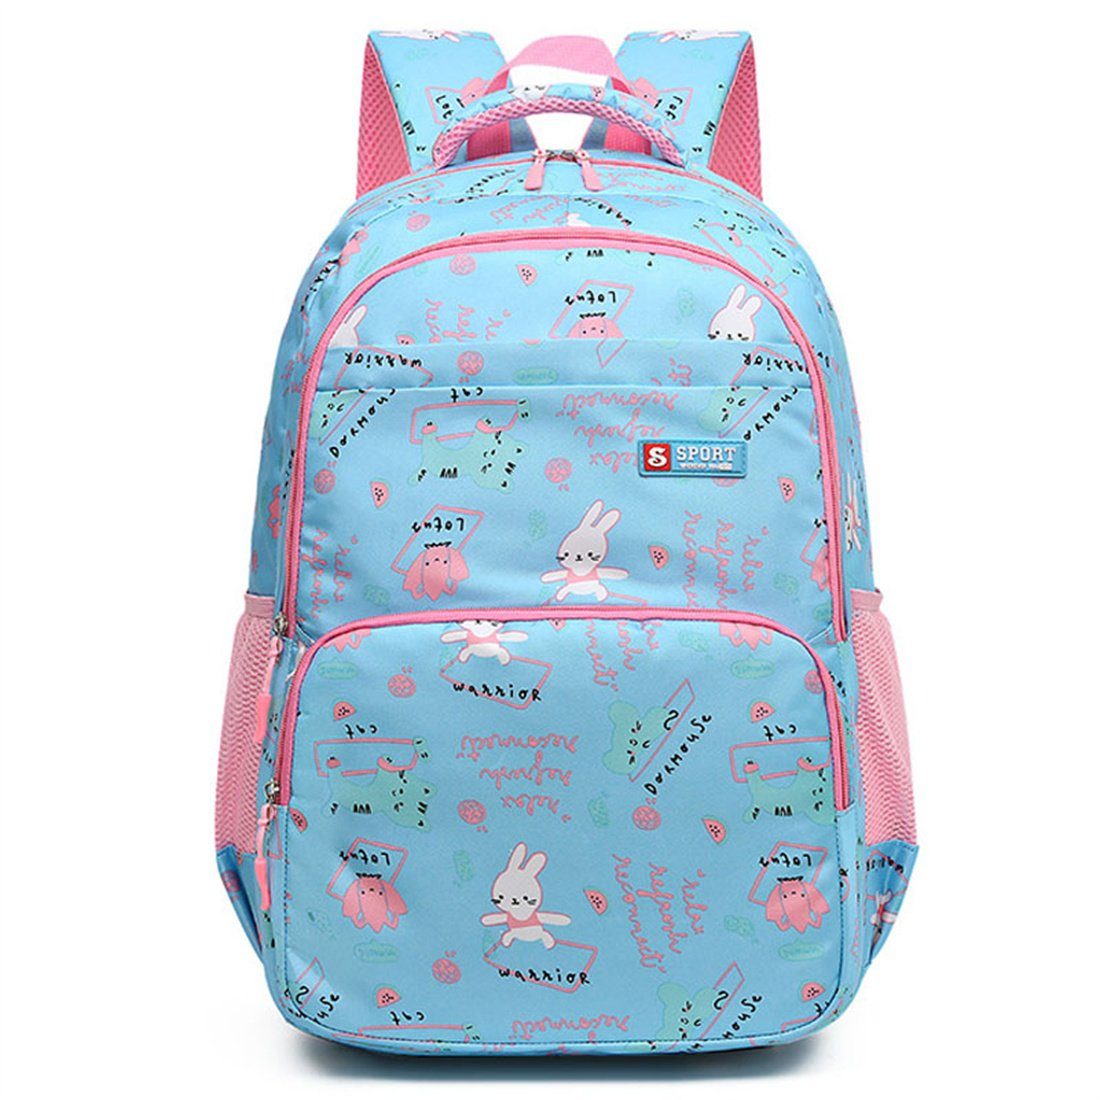 DÖRÖY Schulranzen Schultaschen für Kinder der 1. bis 6. Klasse, Schulrucksäcke,Geschenke blau